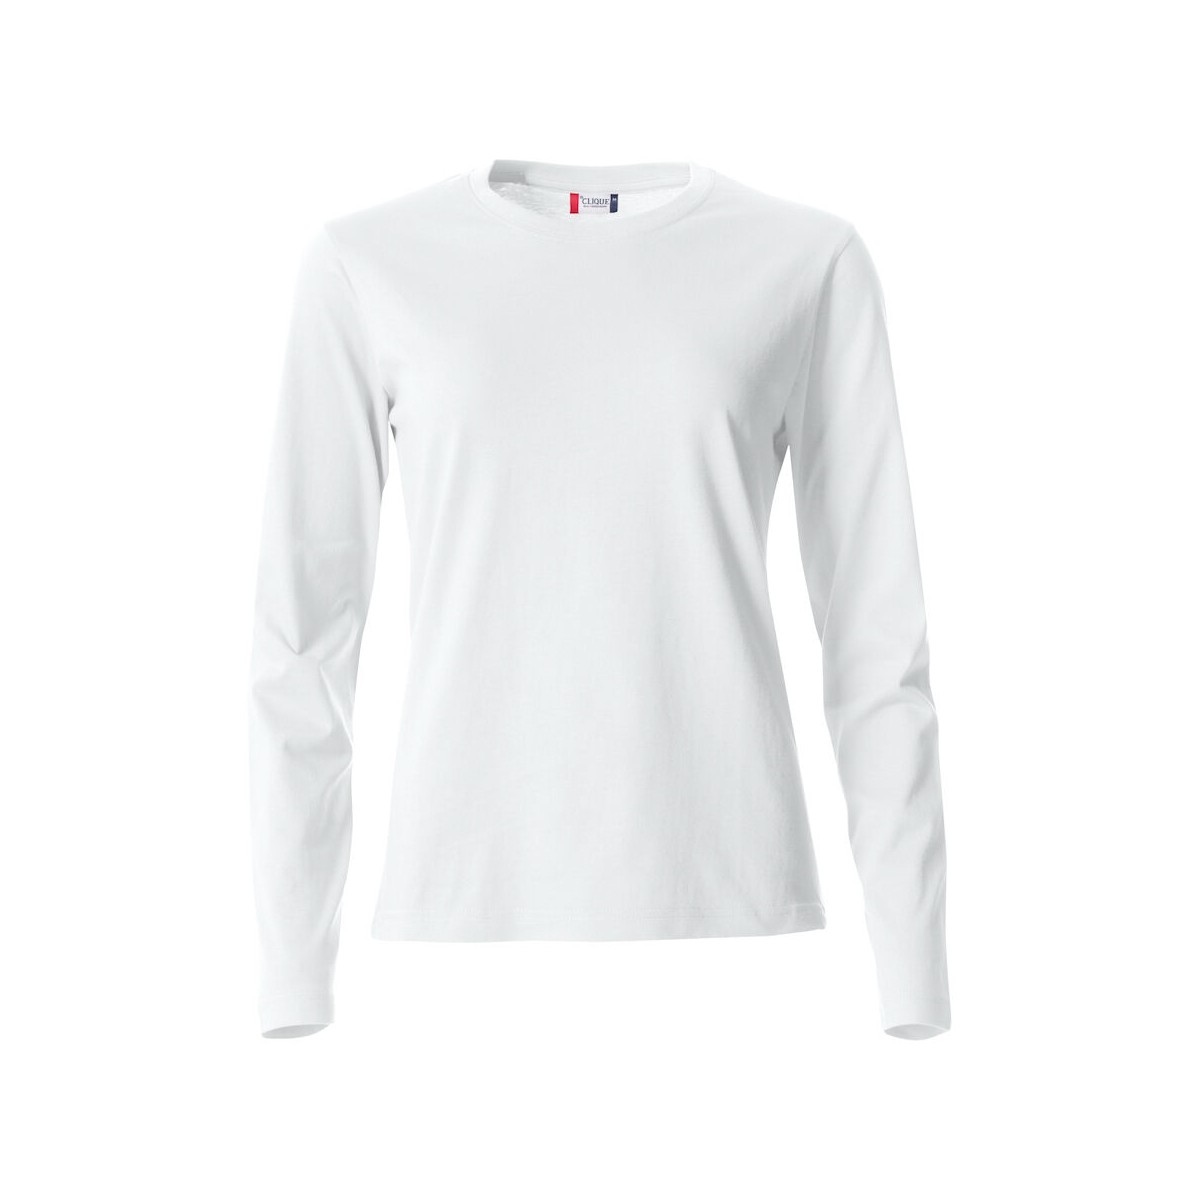 T-shirt manches longues - 100% coton - CLIQUE - Coupe femme - Personnalisable en petite quantité